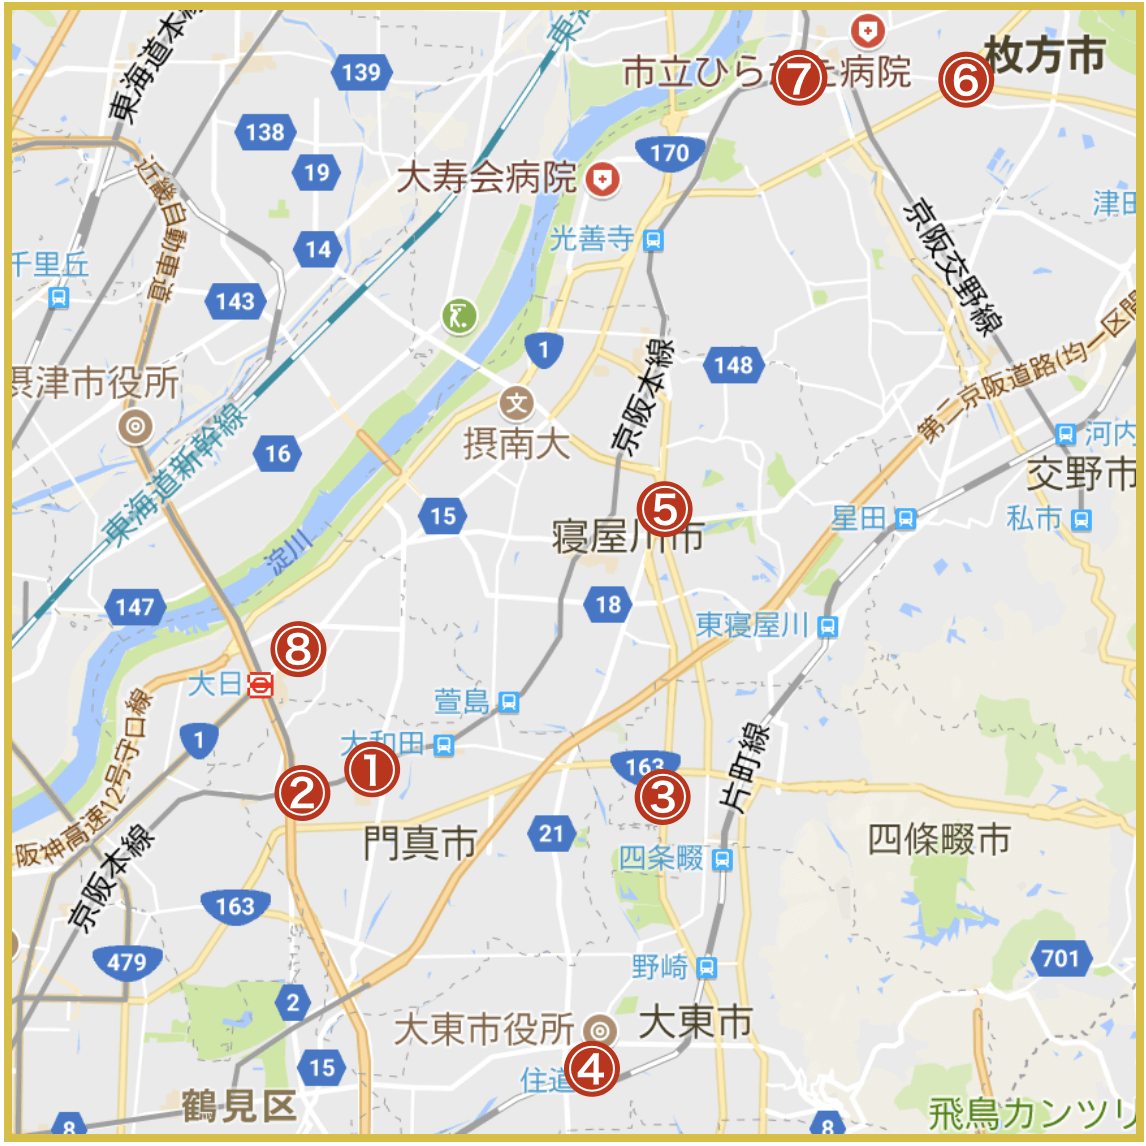 大阪府北河内地域にあるアイフル店舗・ATMの位置